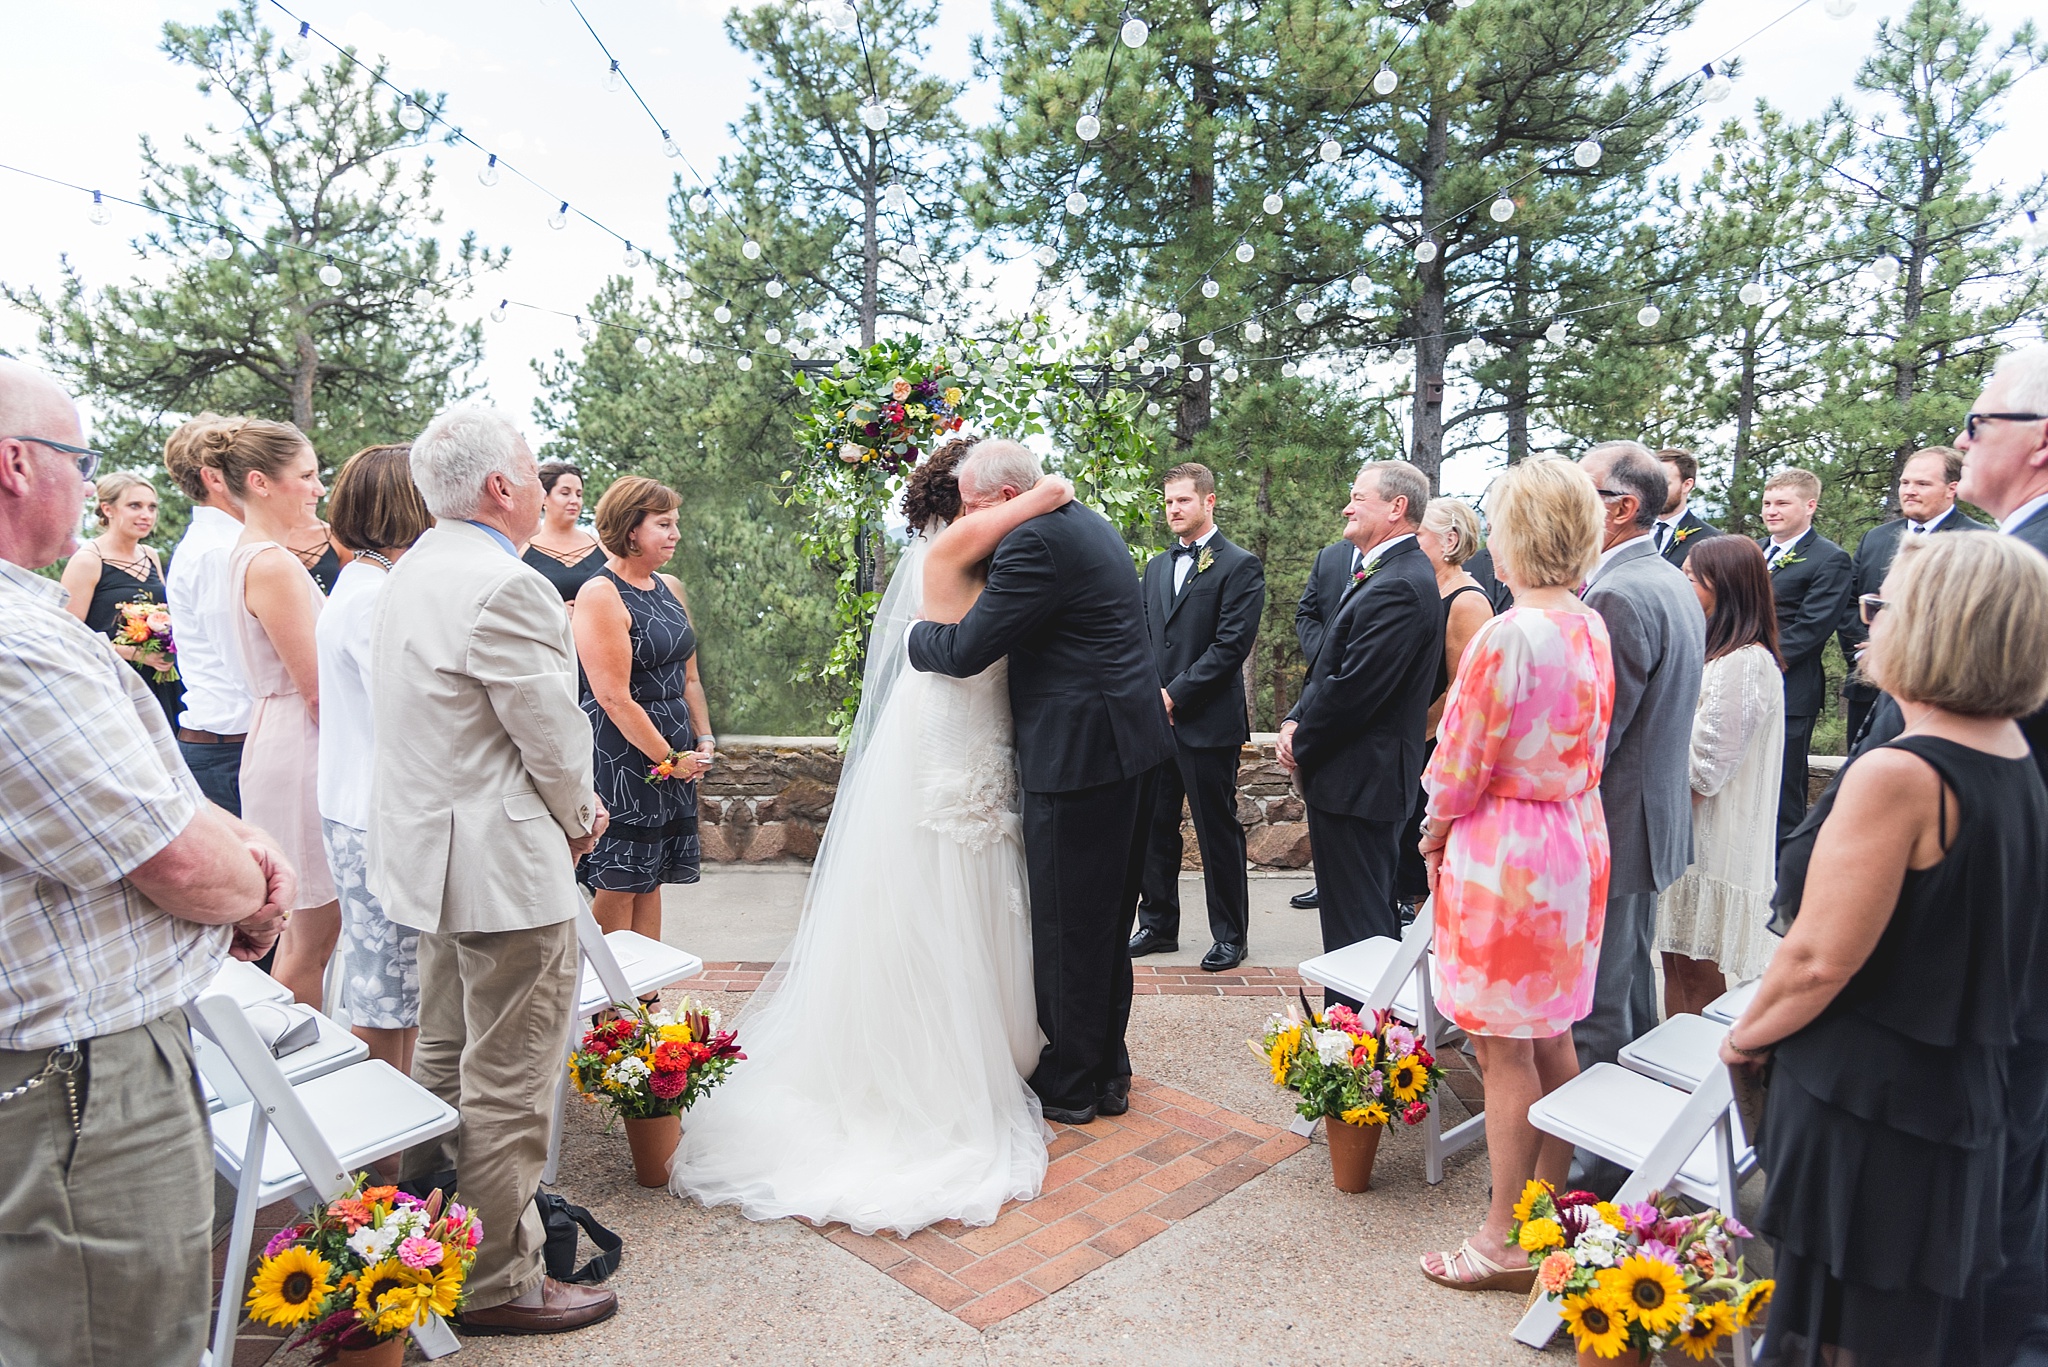 Kellie & Brian's Boettcher Mansion Wedding in Golden, Colorado